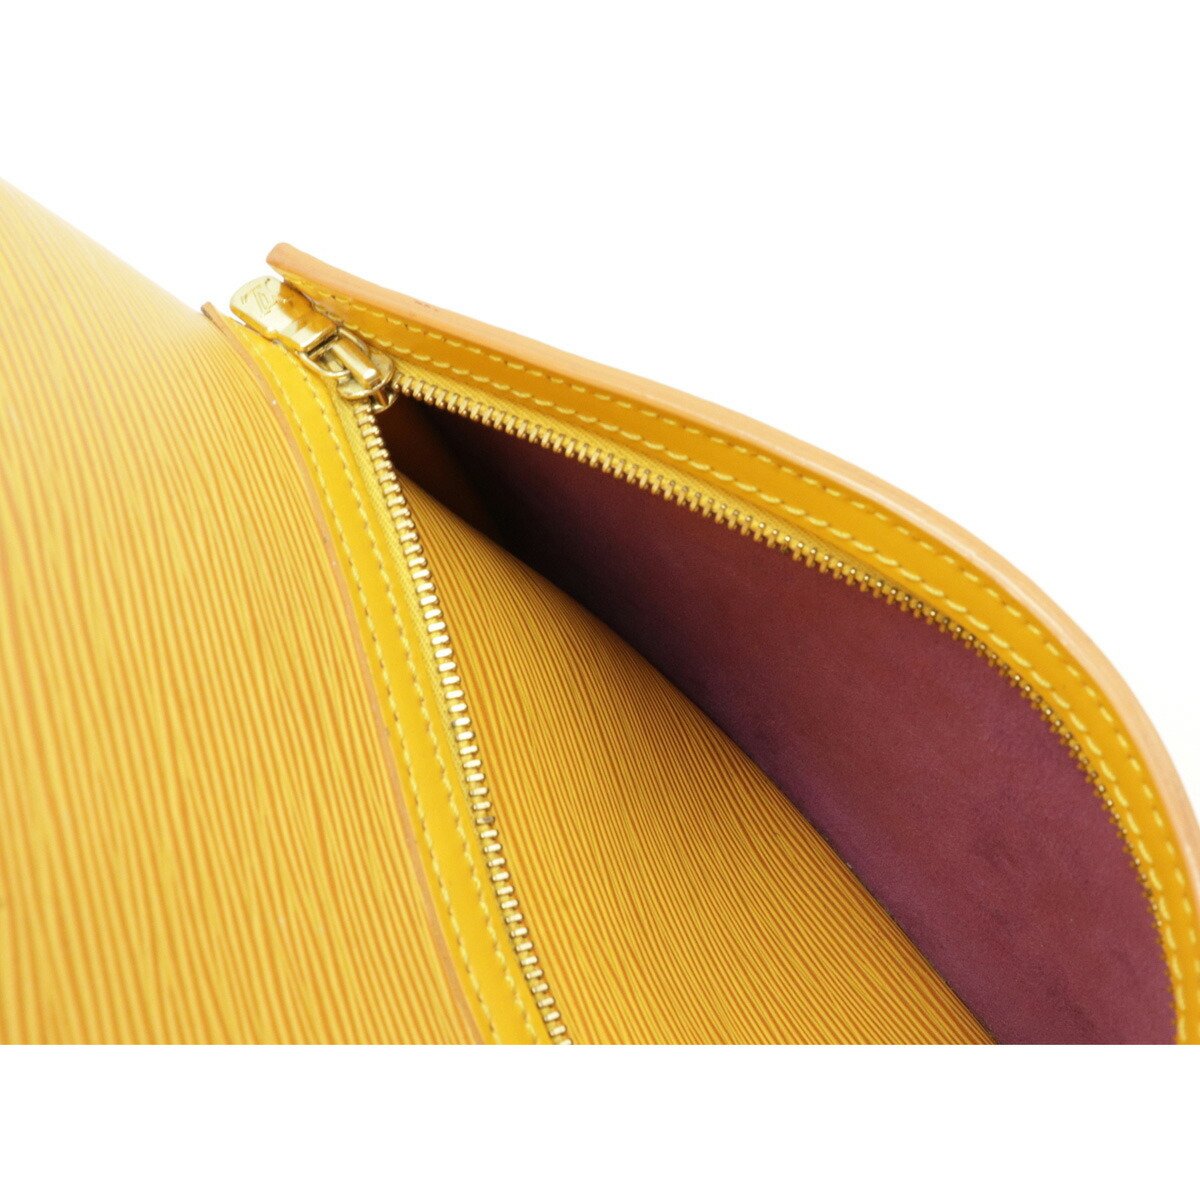 Louis Vuitton Tassil Yellow EPI Leather Alma PM Bag